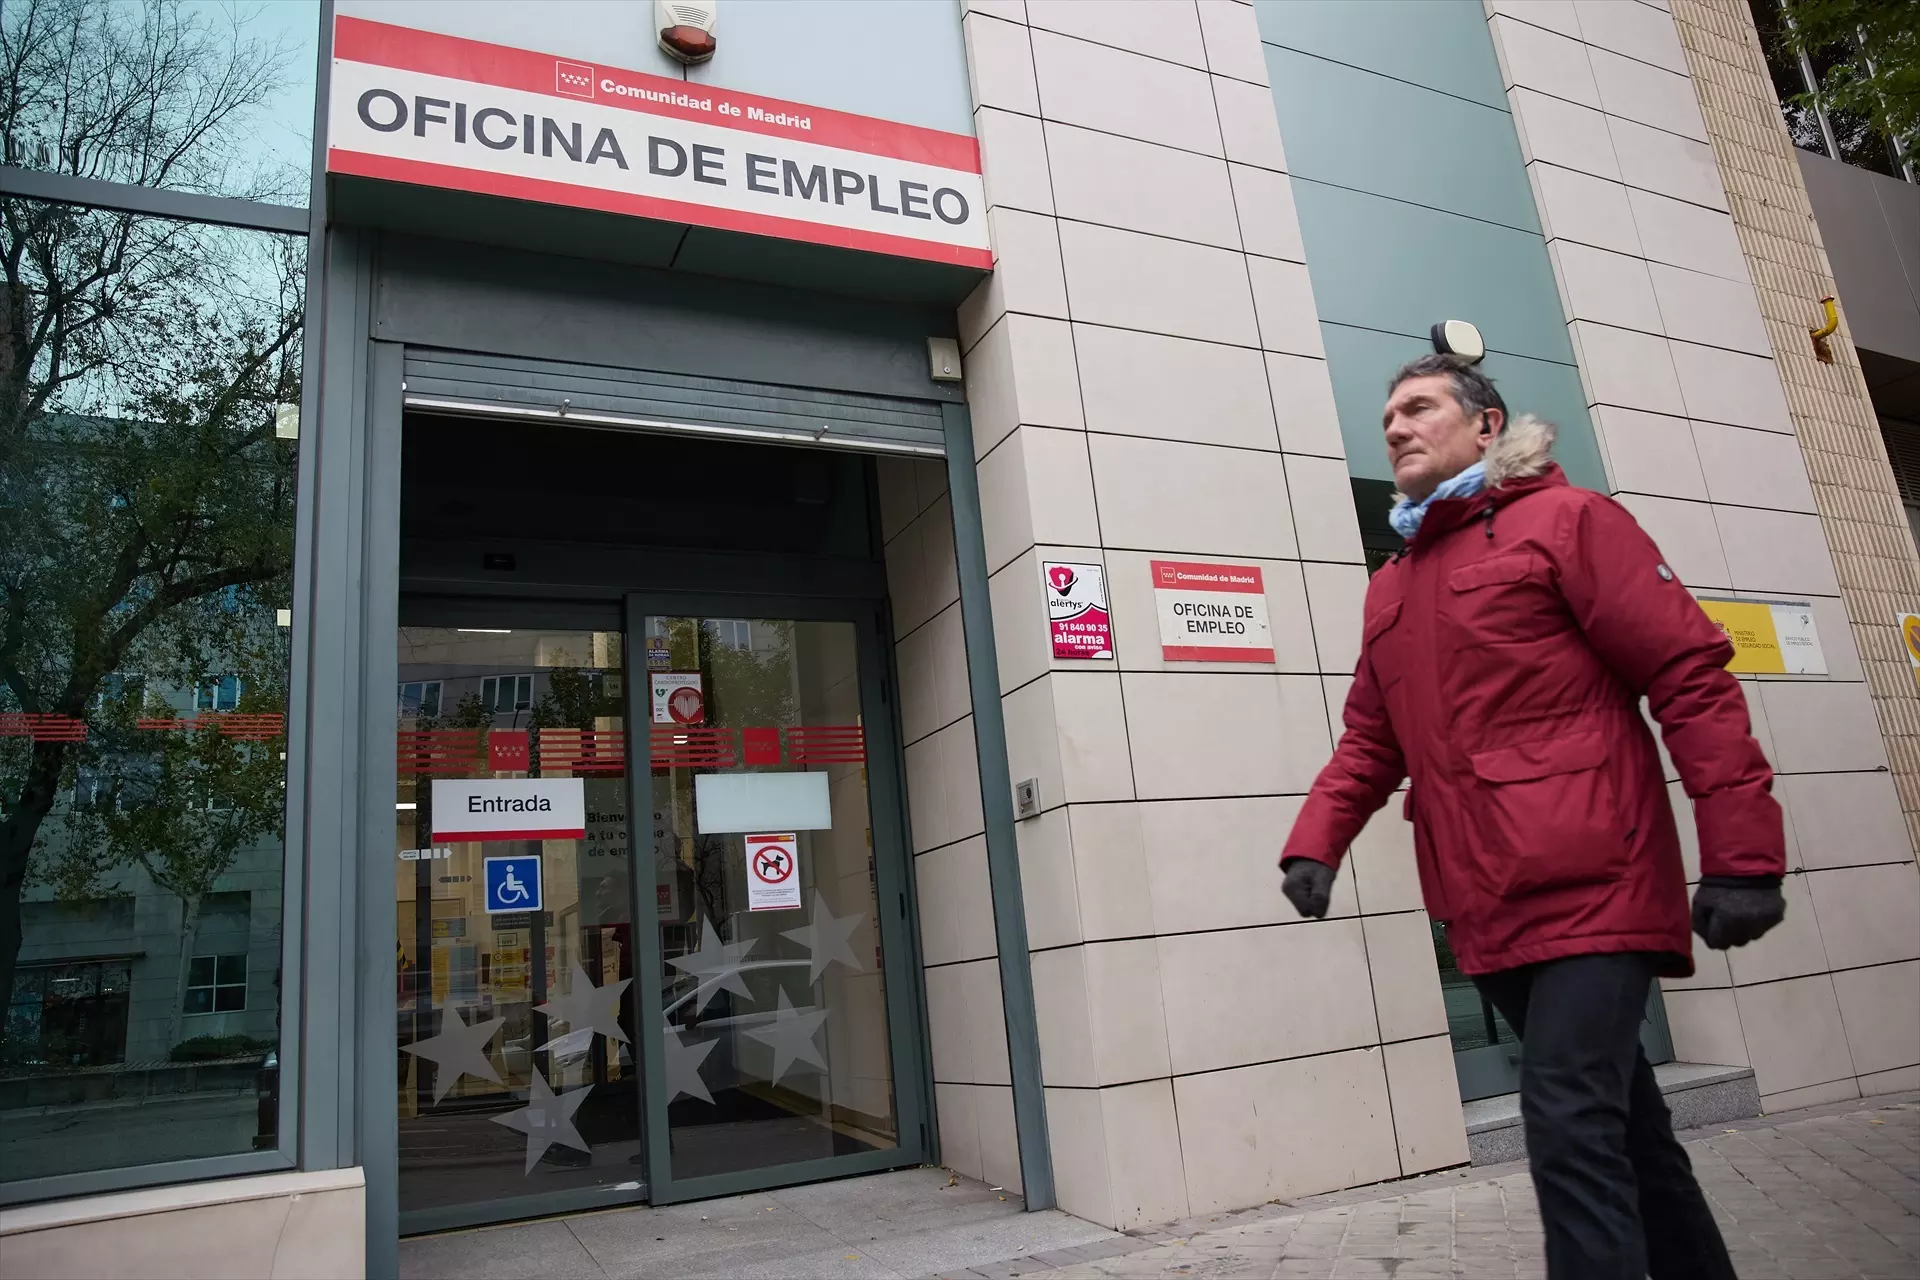 Una persona camina frente a la entrada de una oficina de empleo en Madrid. Imagen de archivo. — Jesús Hellín / Europa Press